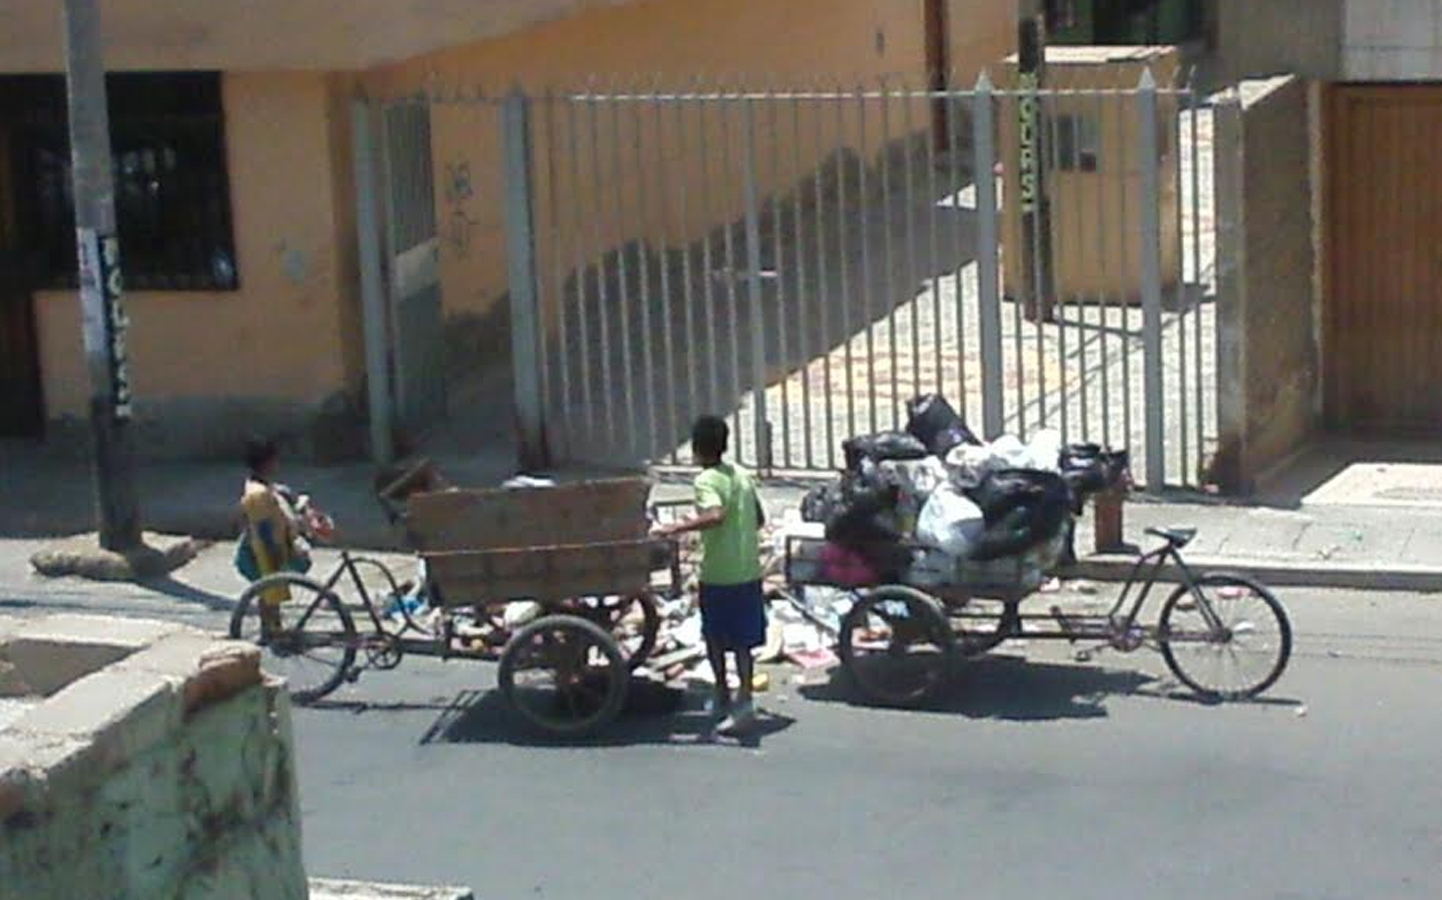 Niños recicladores aprovechan para prestar el servicio de recojo de basura (Foto: WhatsApp / Enrique Gamarra)